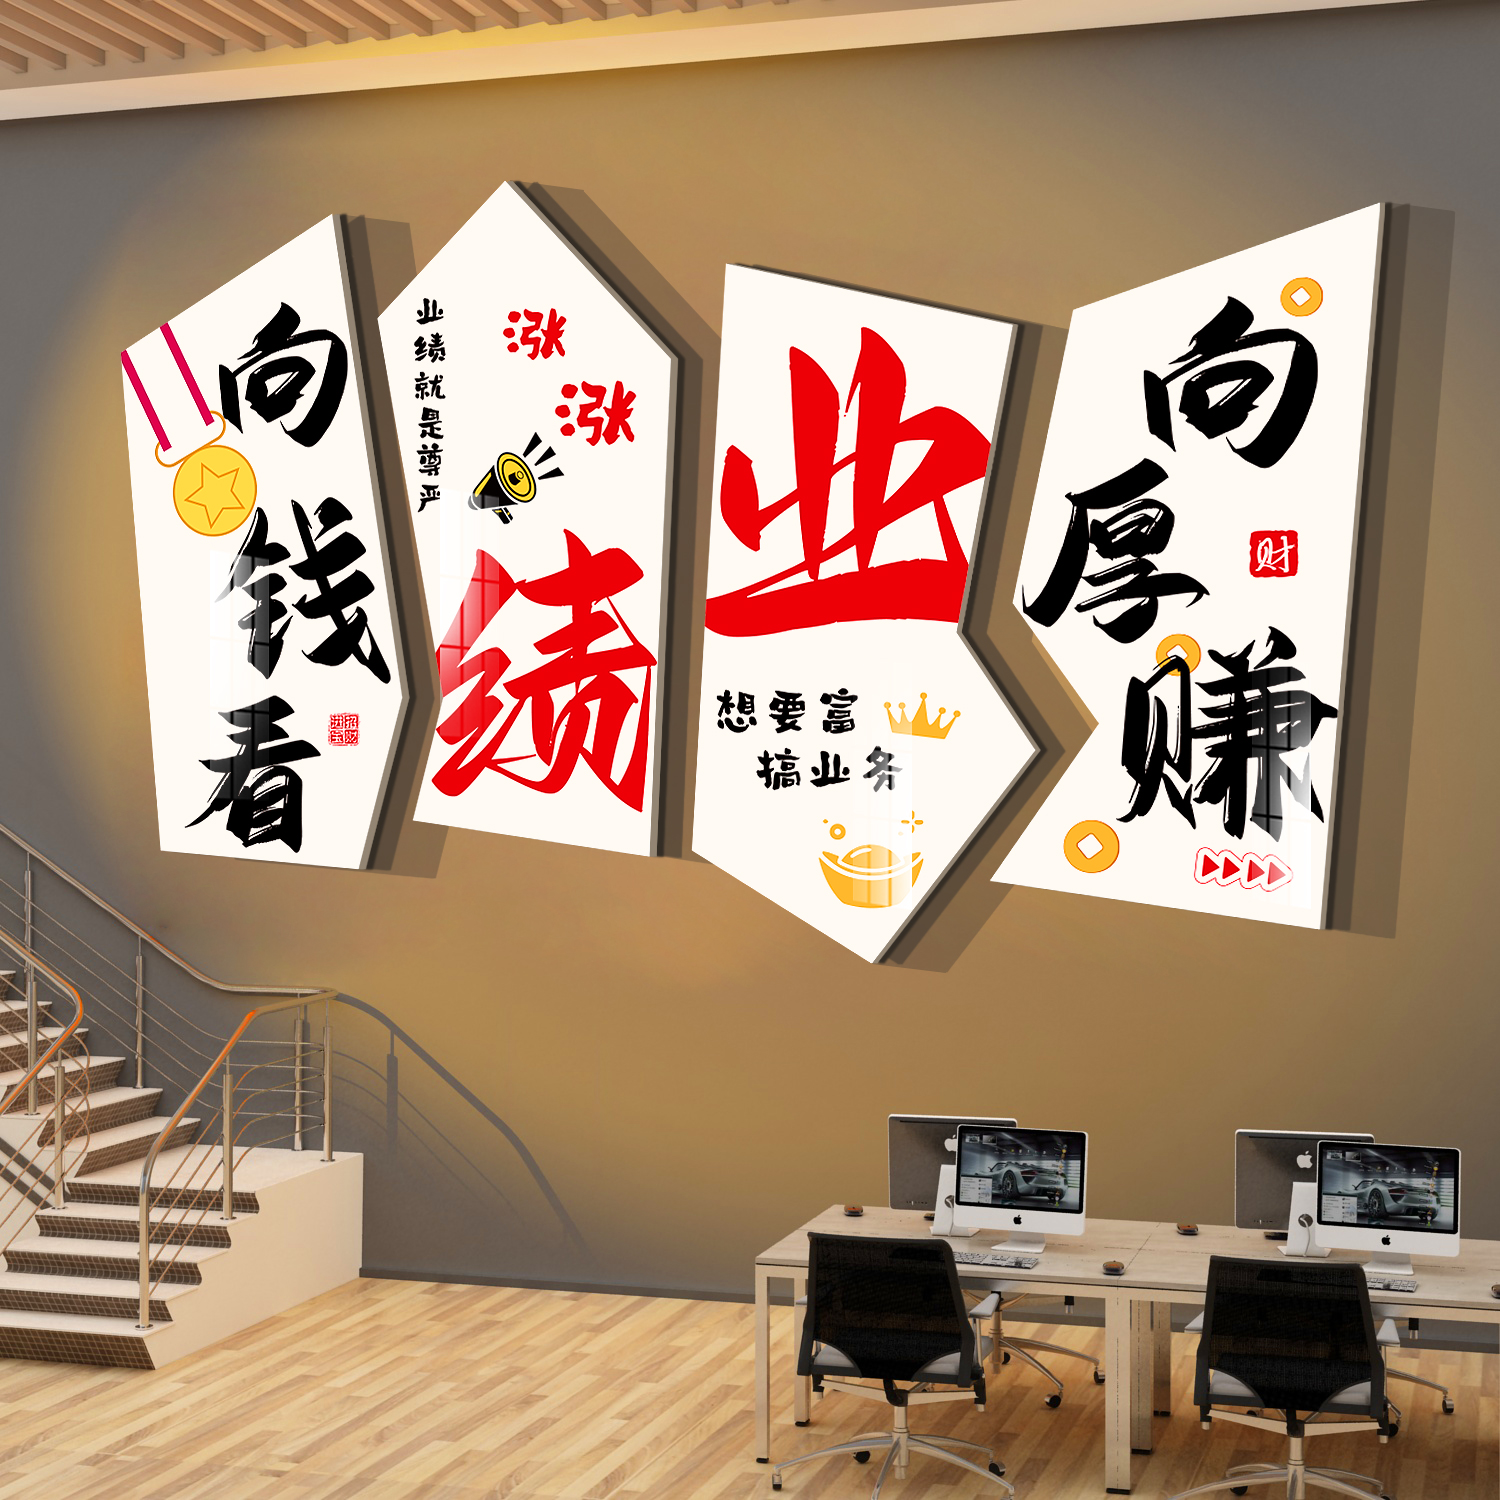 销售团队办公室墙面装饰企业文化氛围